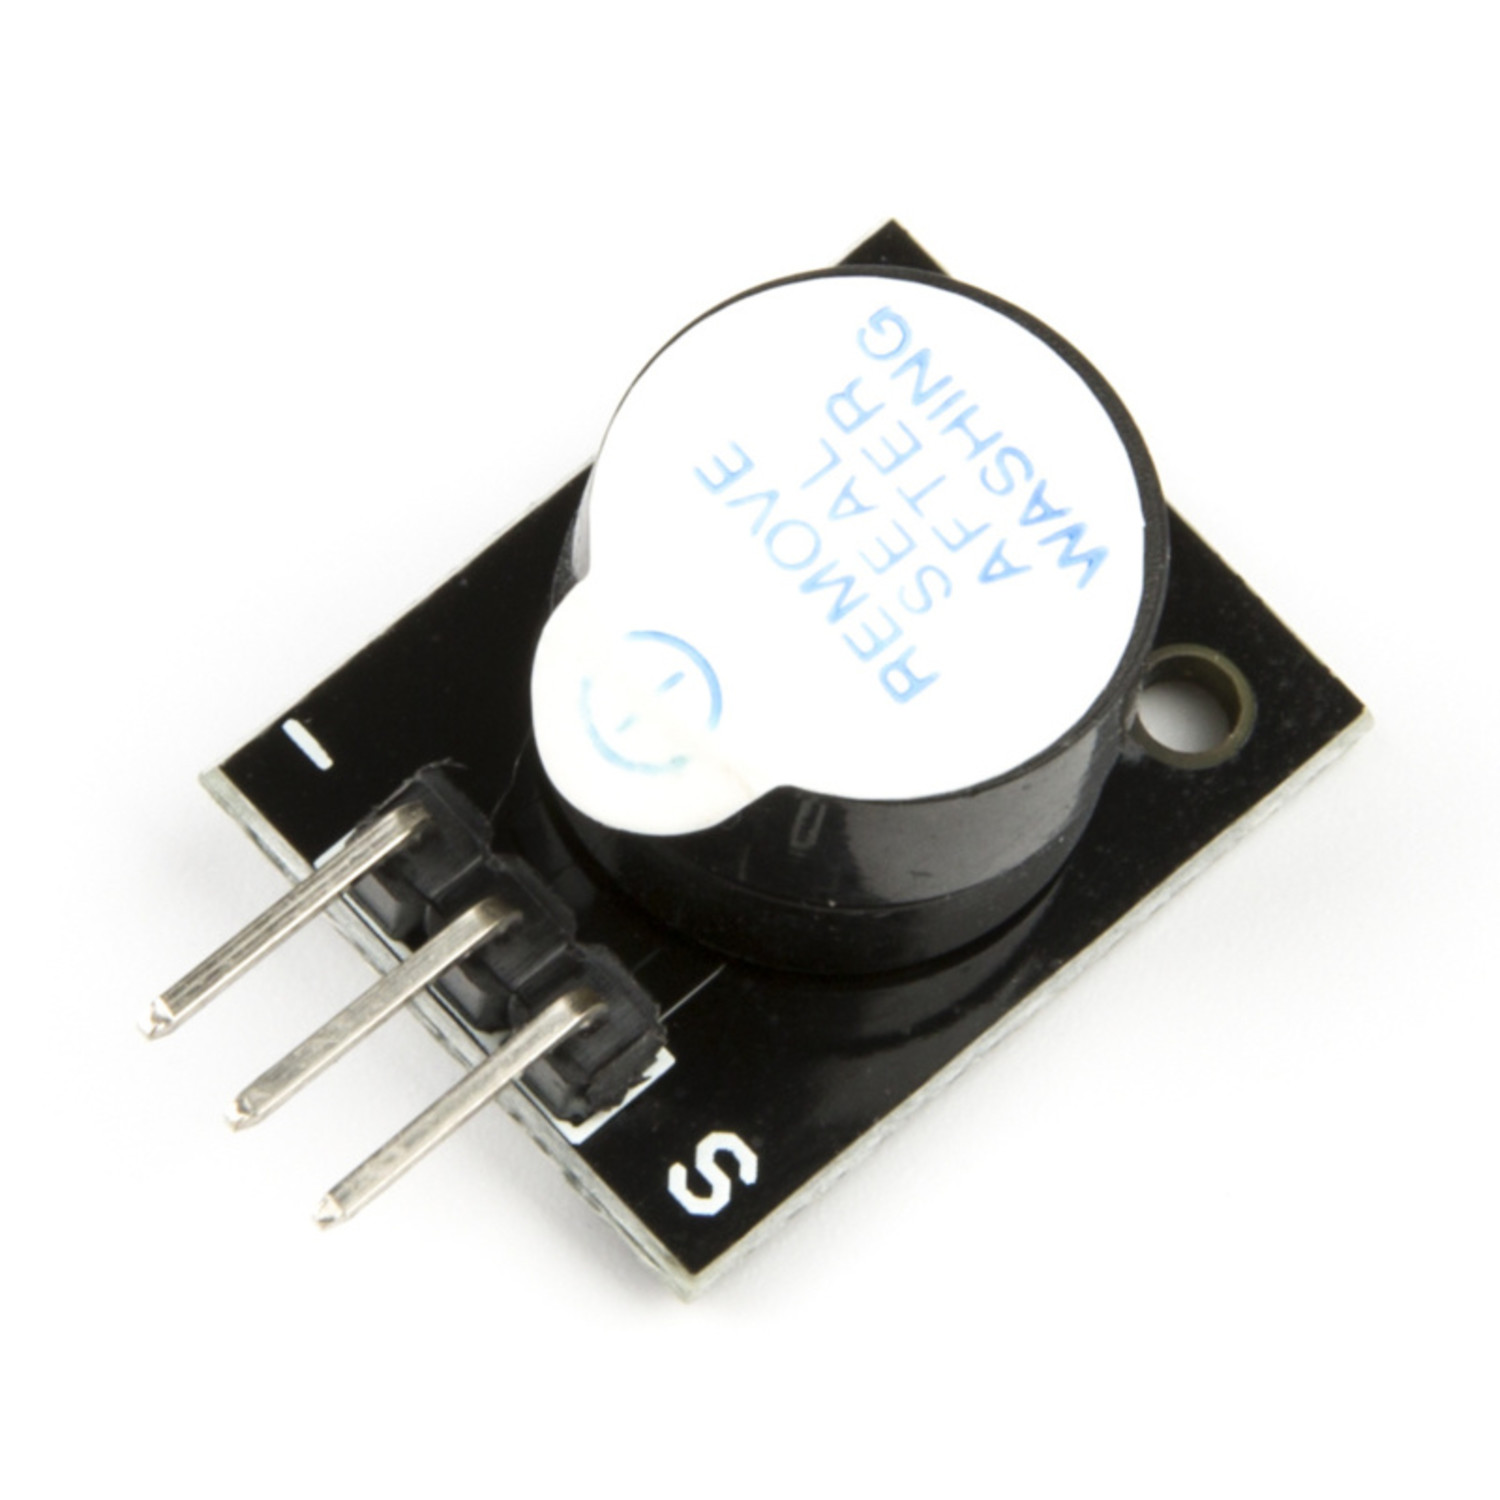 Module Buzzer Actif pour Arduino